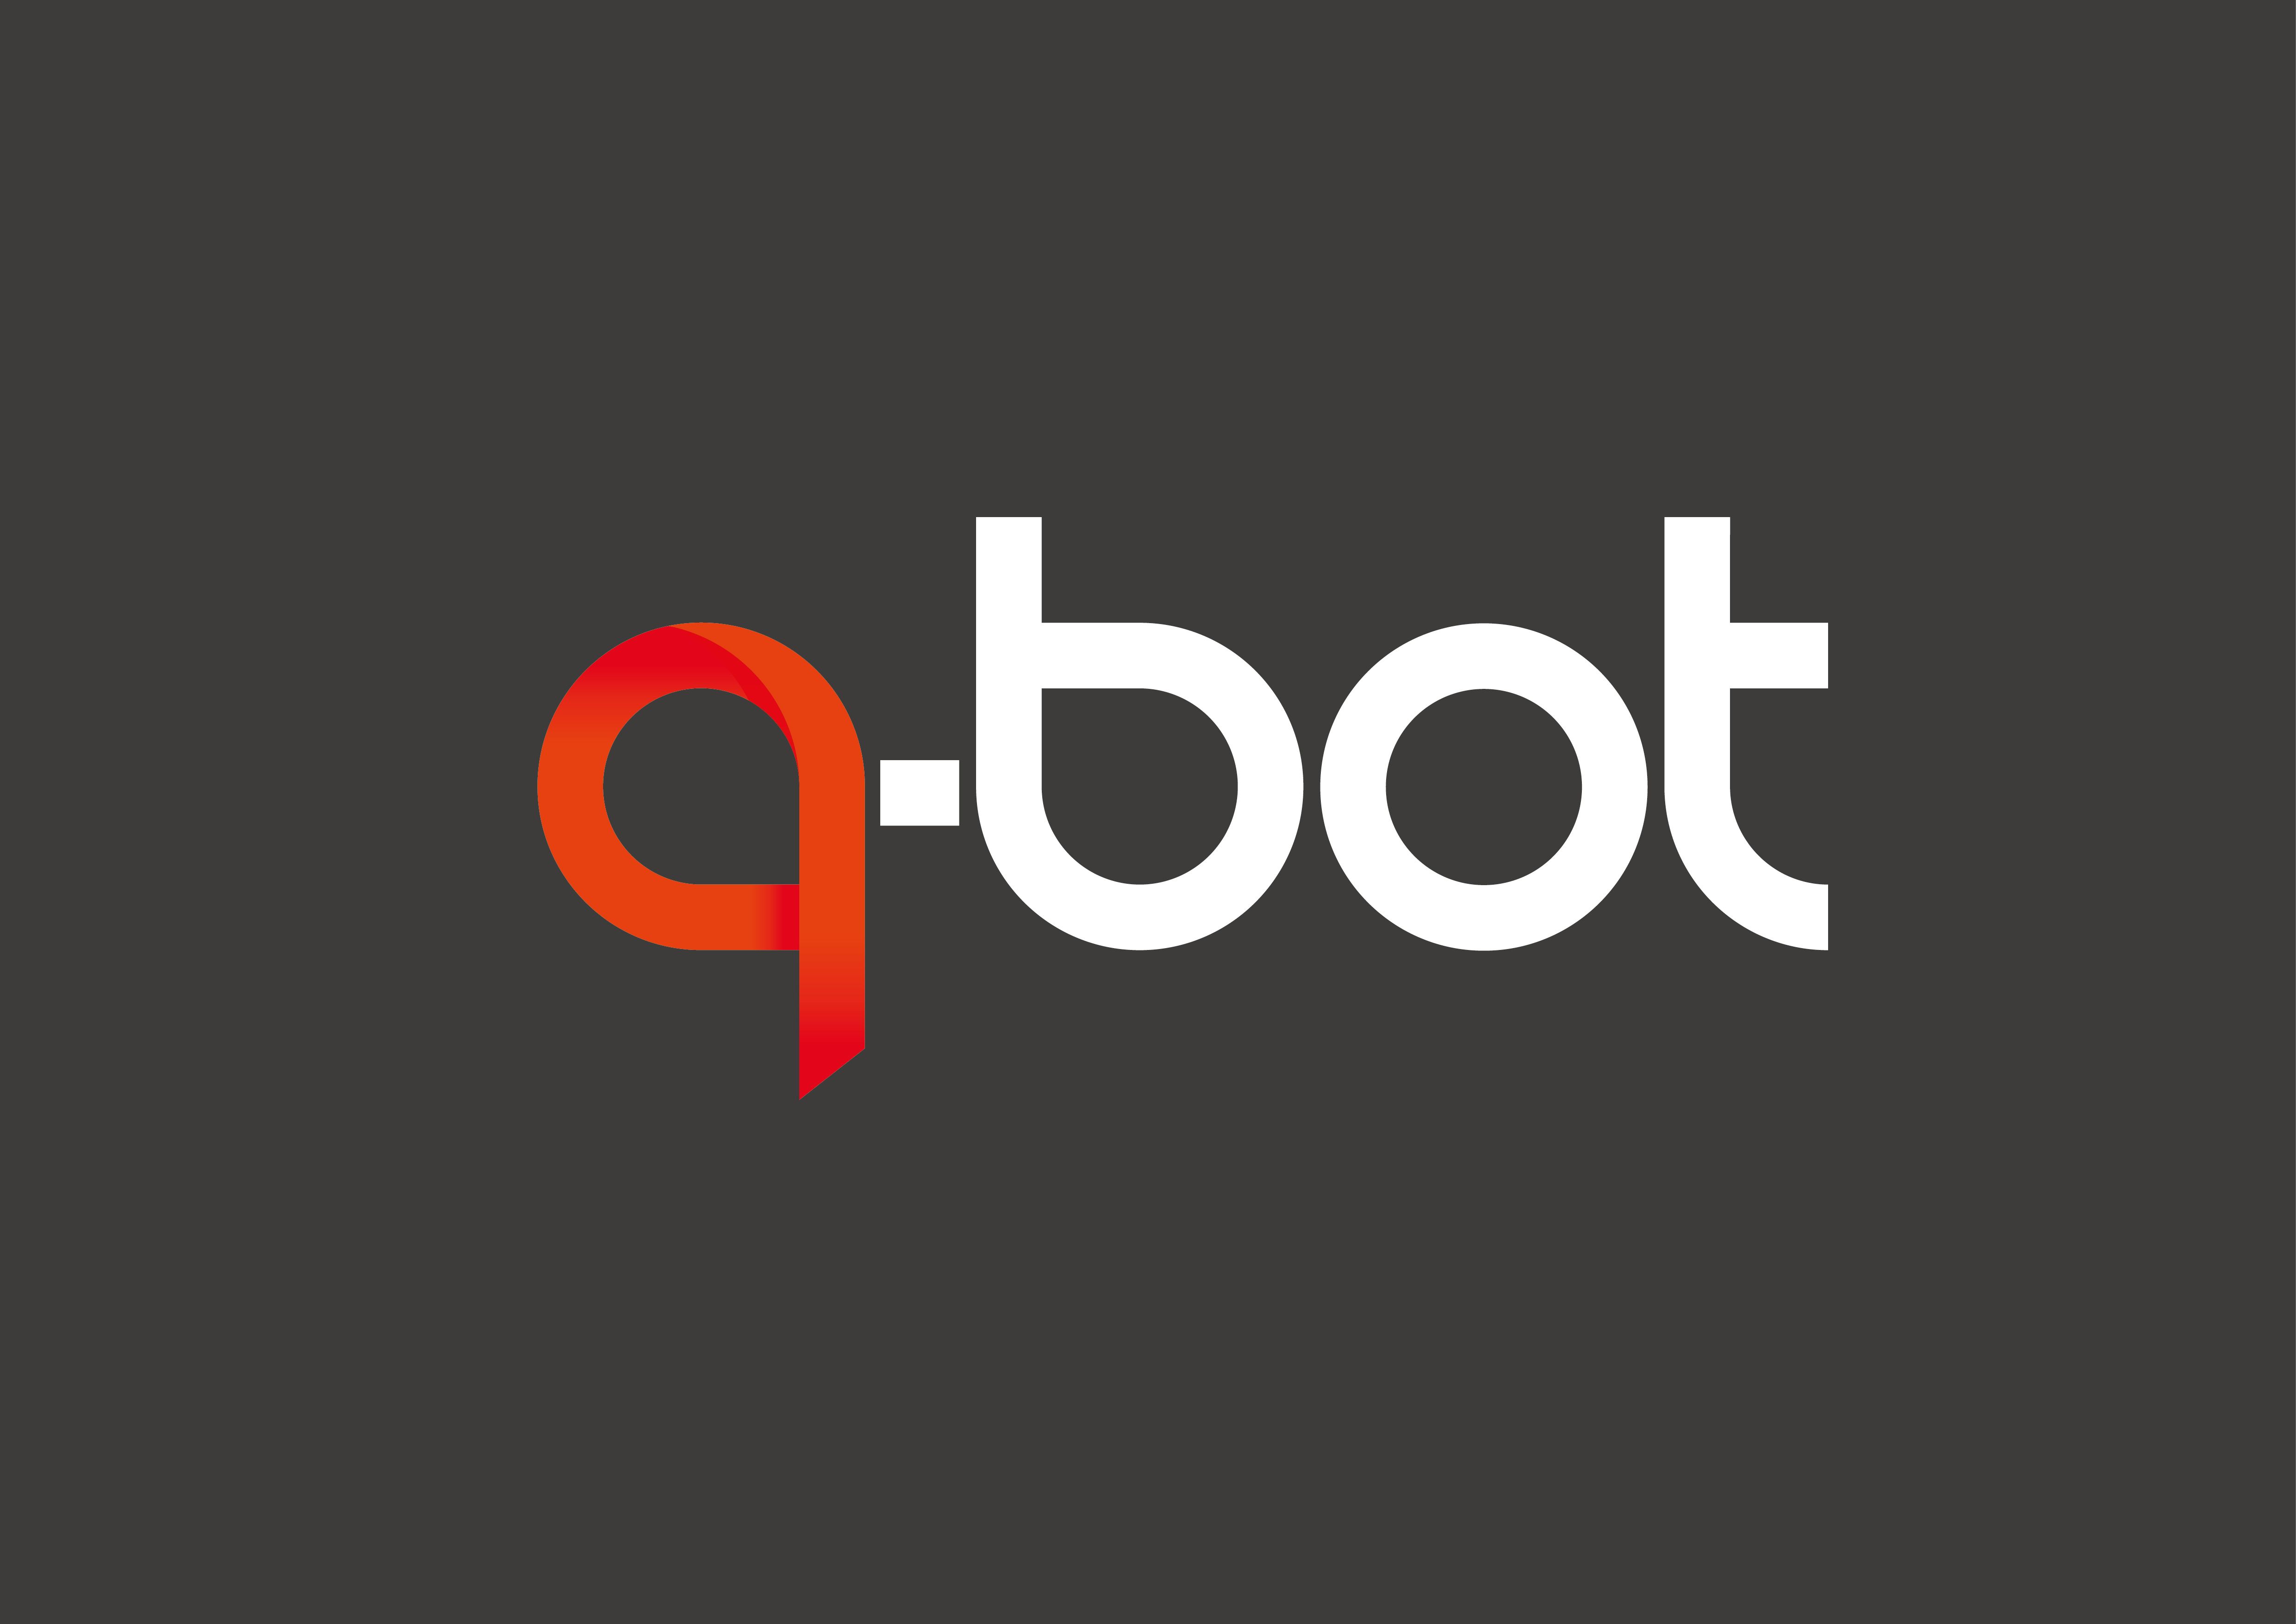 Q-Bot Ltd